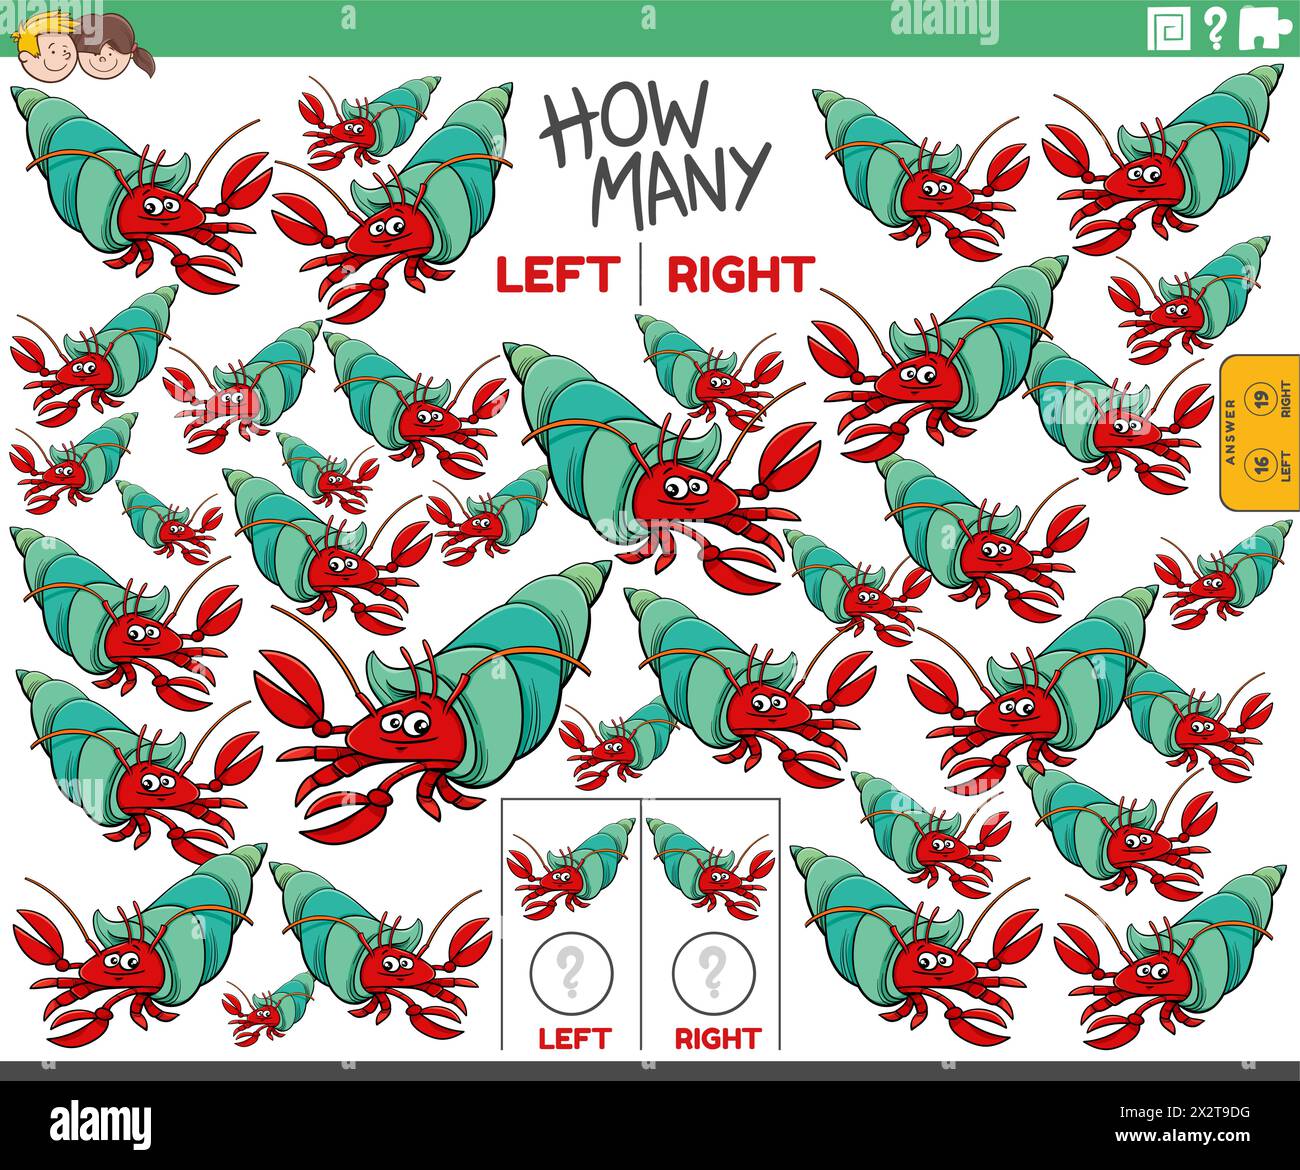 Illustration de bande dessinée de jeu éducatif de compter à gauche et à droite des images orientées de caractère animal de crabe ermite Illustration de Vecteur